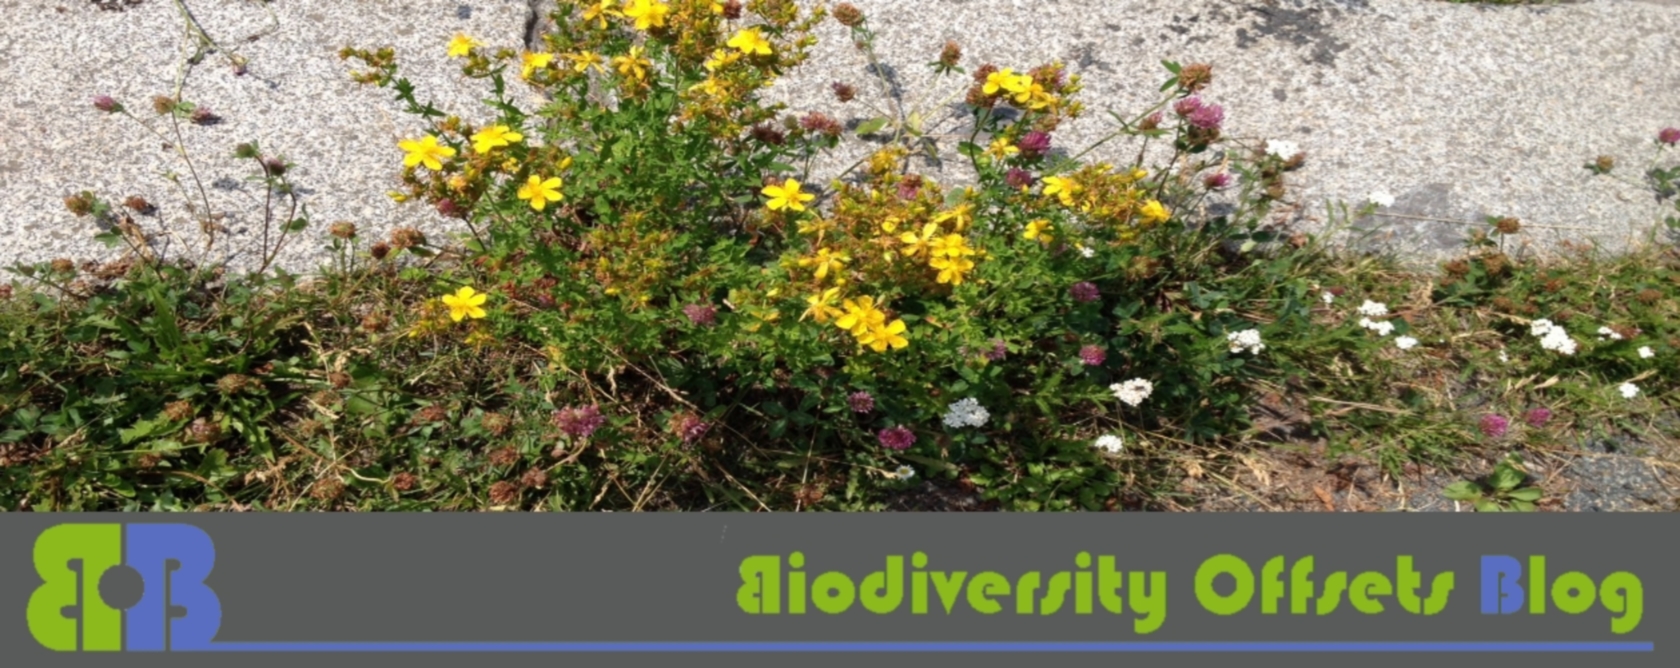 Biodiversity Offsets Blog Logo_hellgruen_blühstreifen_1680